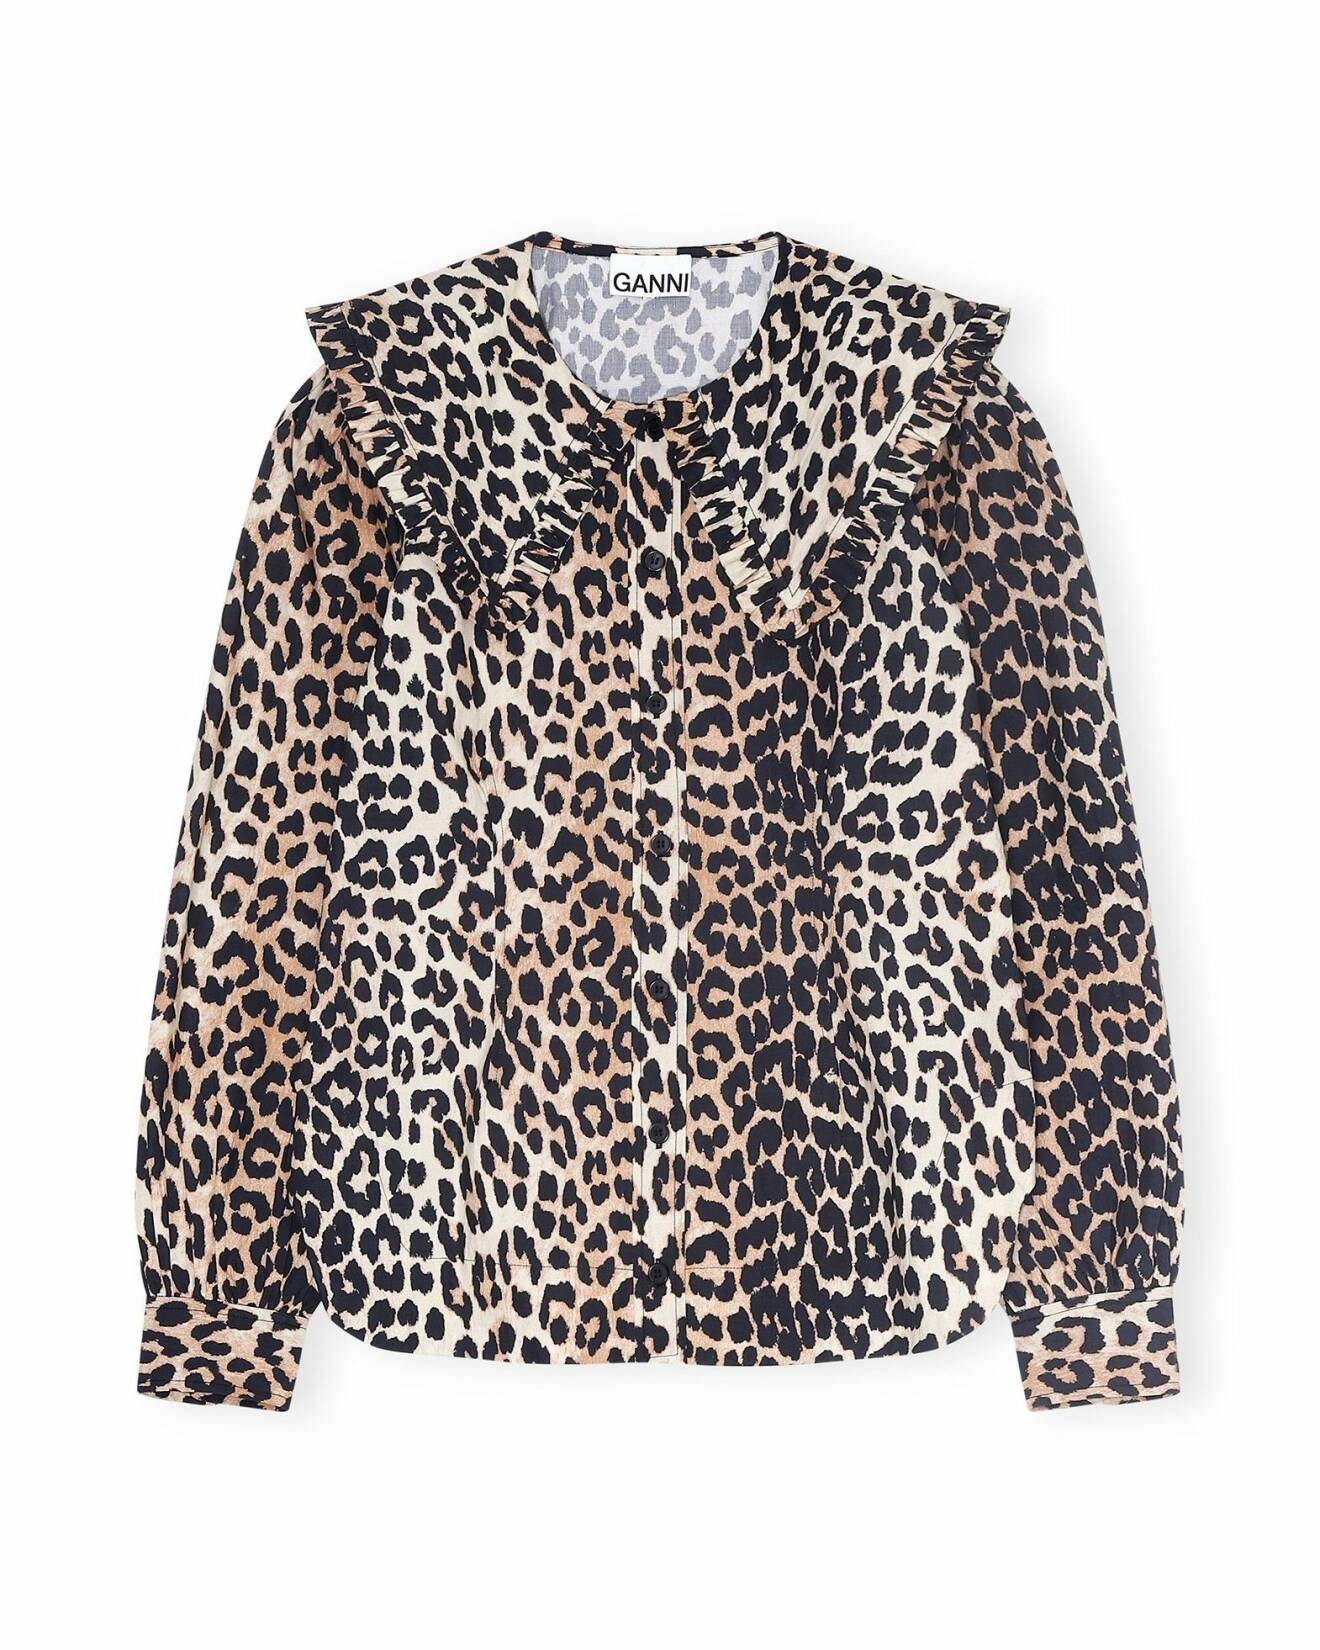 Skjorta med leopardmönster. Oversizad krage med volangdetalj på. Skjorta från Ganni/Wakakuu.com